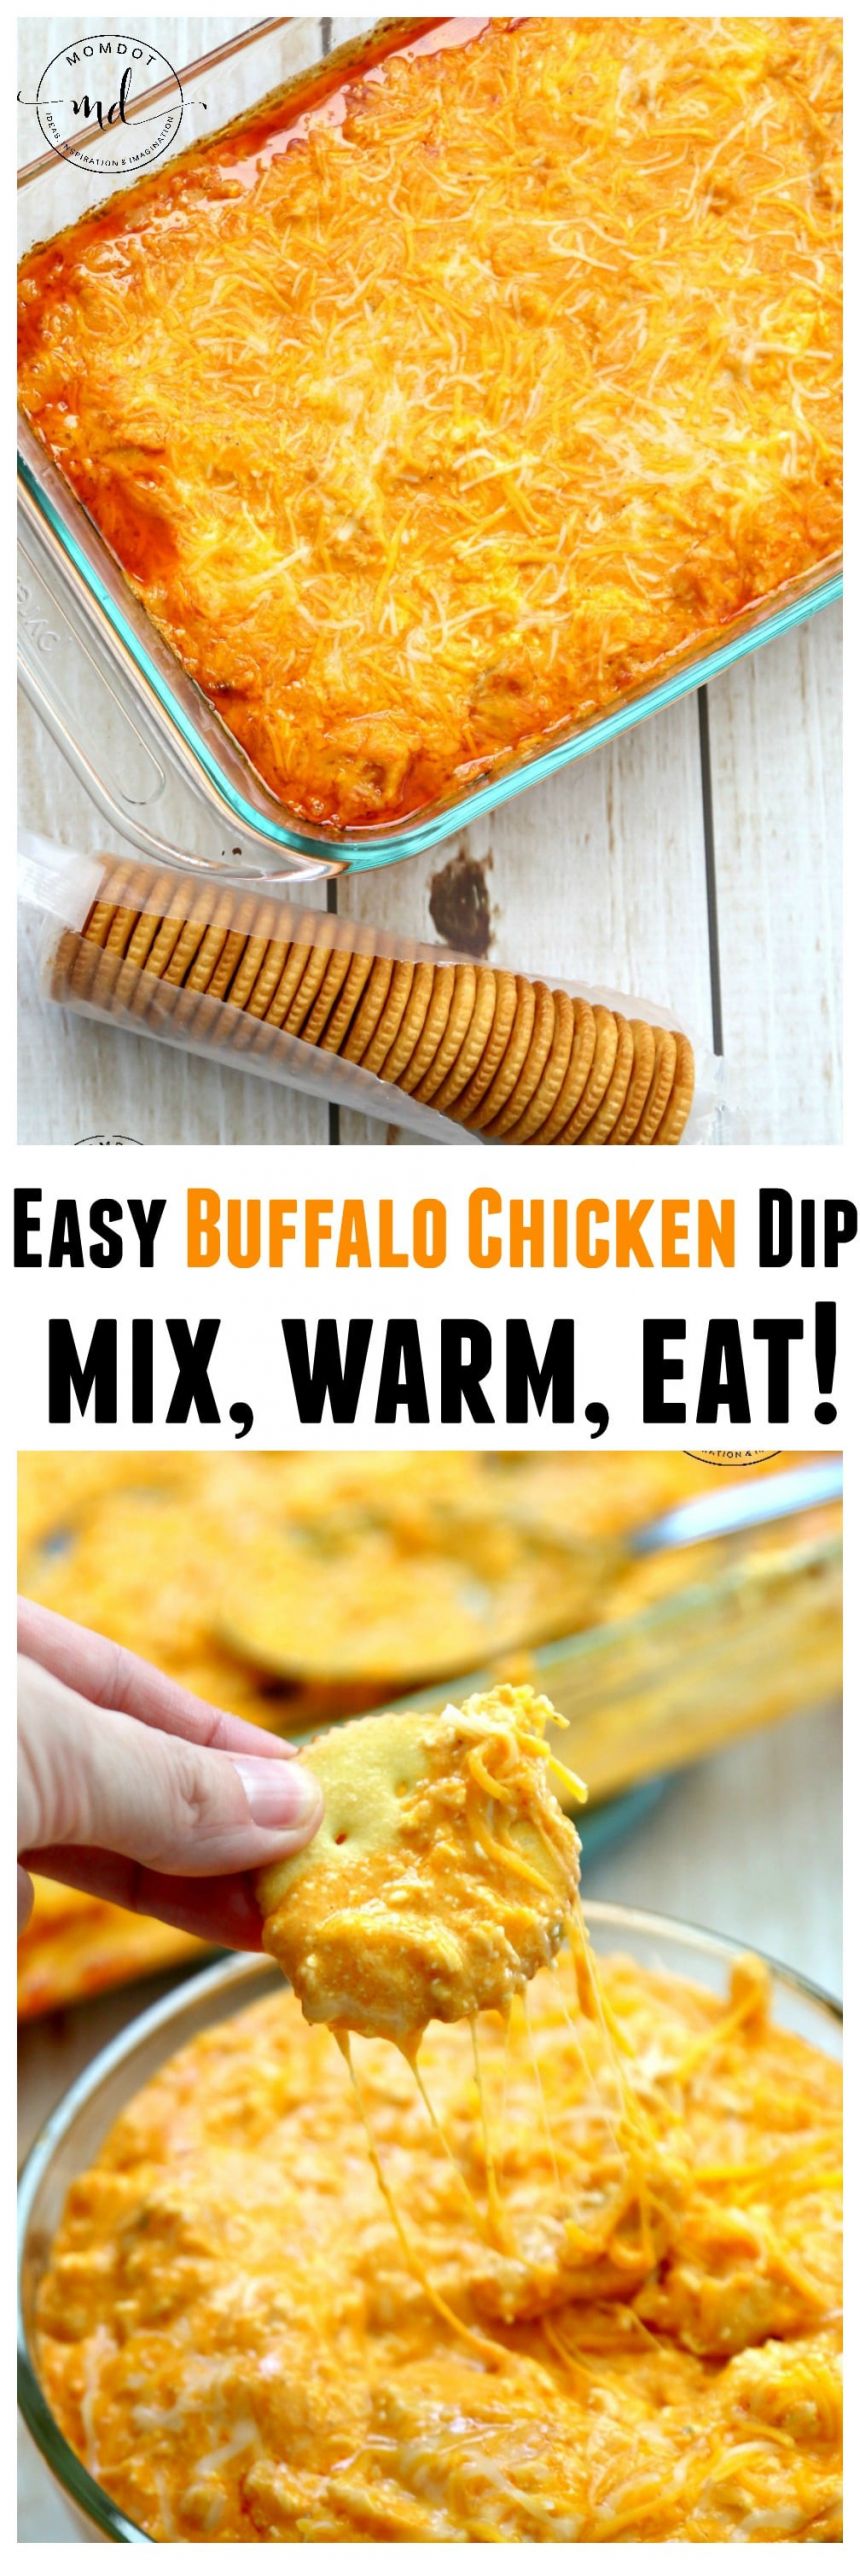 Recipes For Buffalo Chicken Dip
 Easy Buffalo Chicken Dip